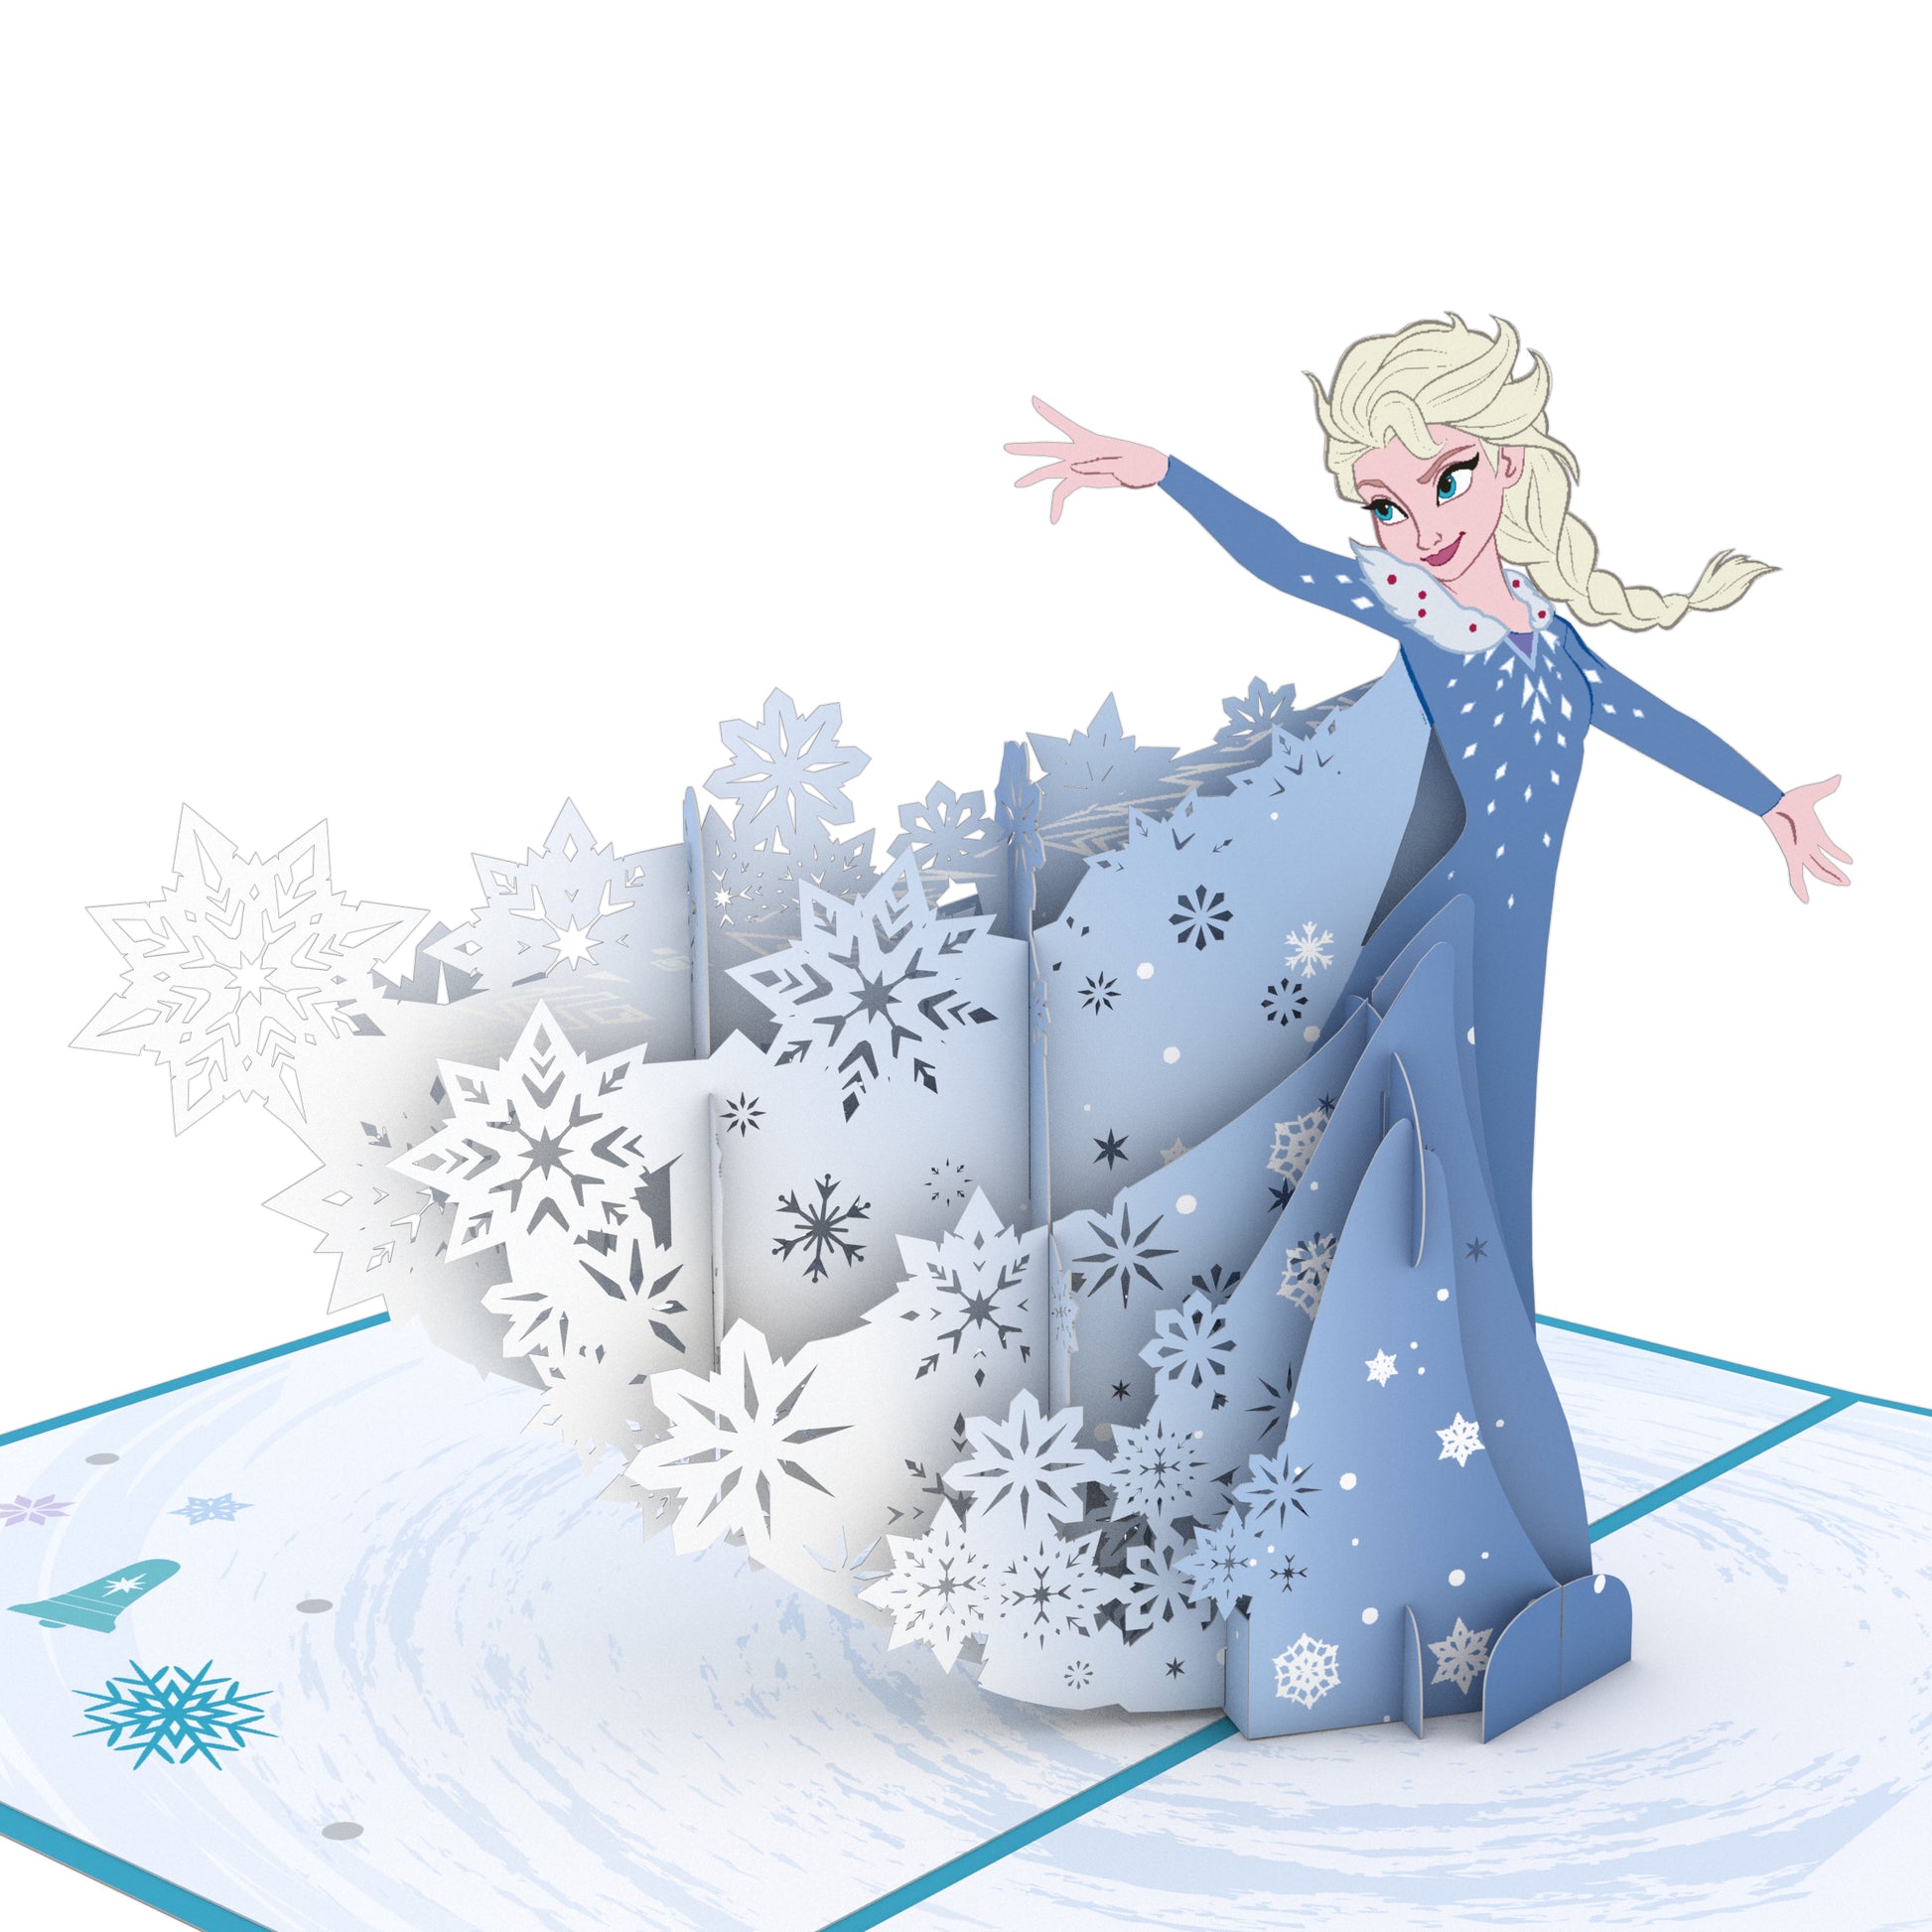 Hassy wacht condensor Disney Frozen Elsa Christmas Pop-Up Card – Lovepop